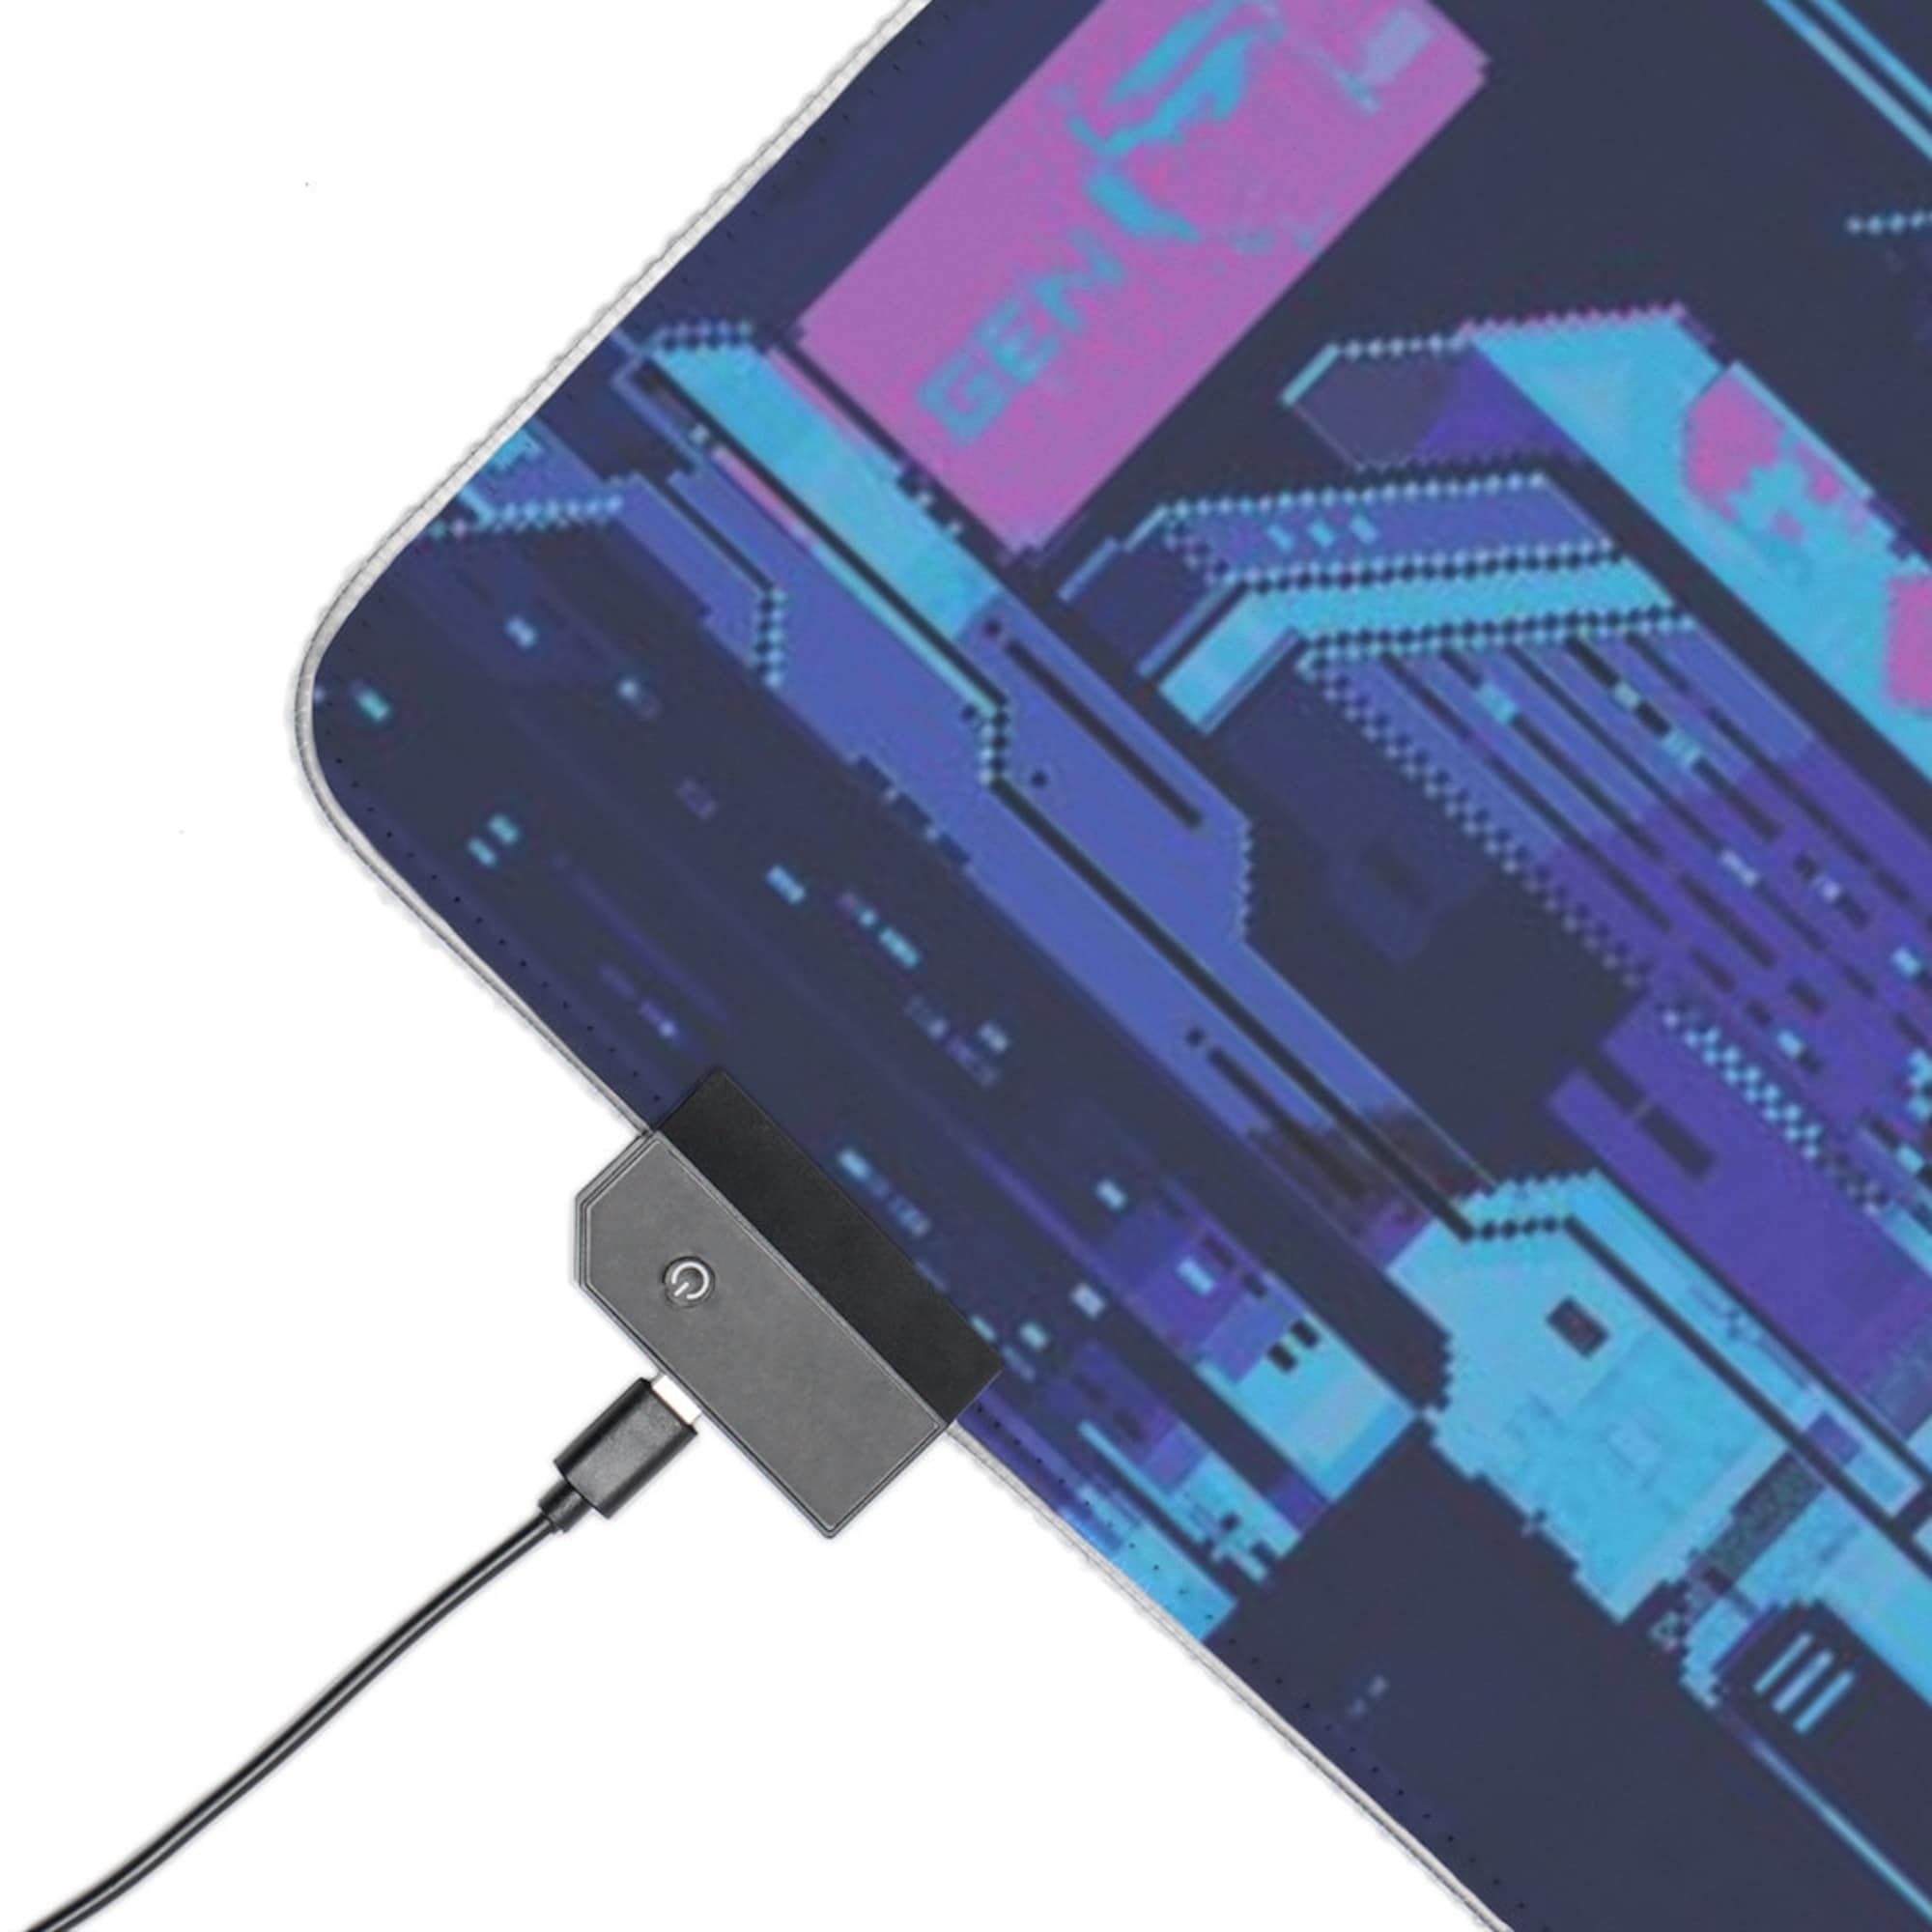 Sewn Edges Blue Vaporwave LED desk mat, Lo-FI Gaming Mouse Pad